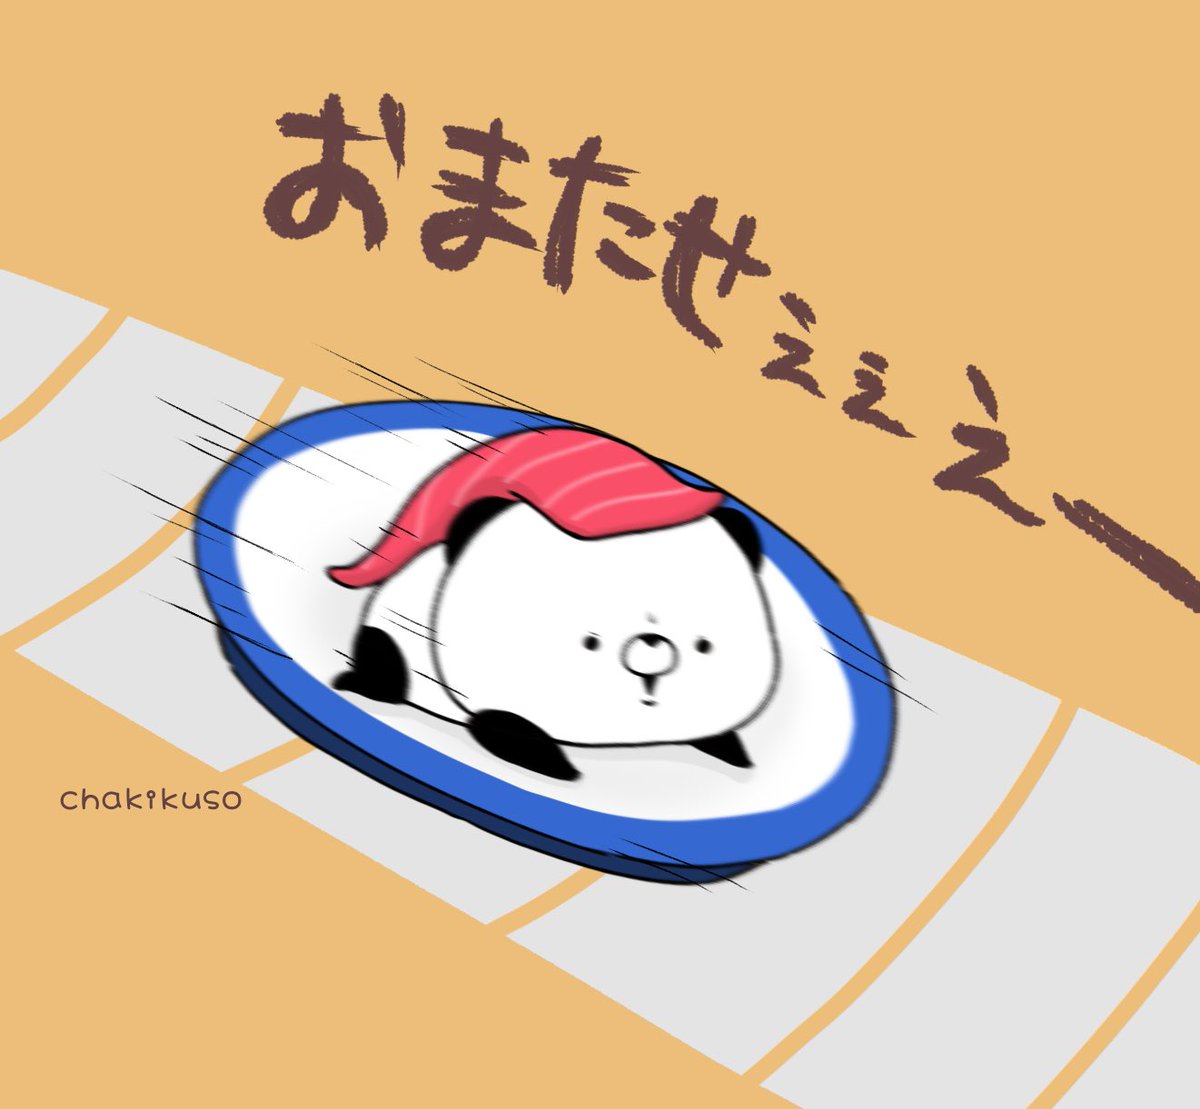 「お寿司の気持ち
#イラスト #寿司 #こころにパンダ 」|chakikusoのイラスト